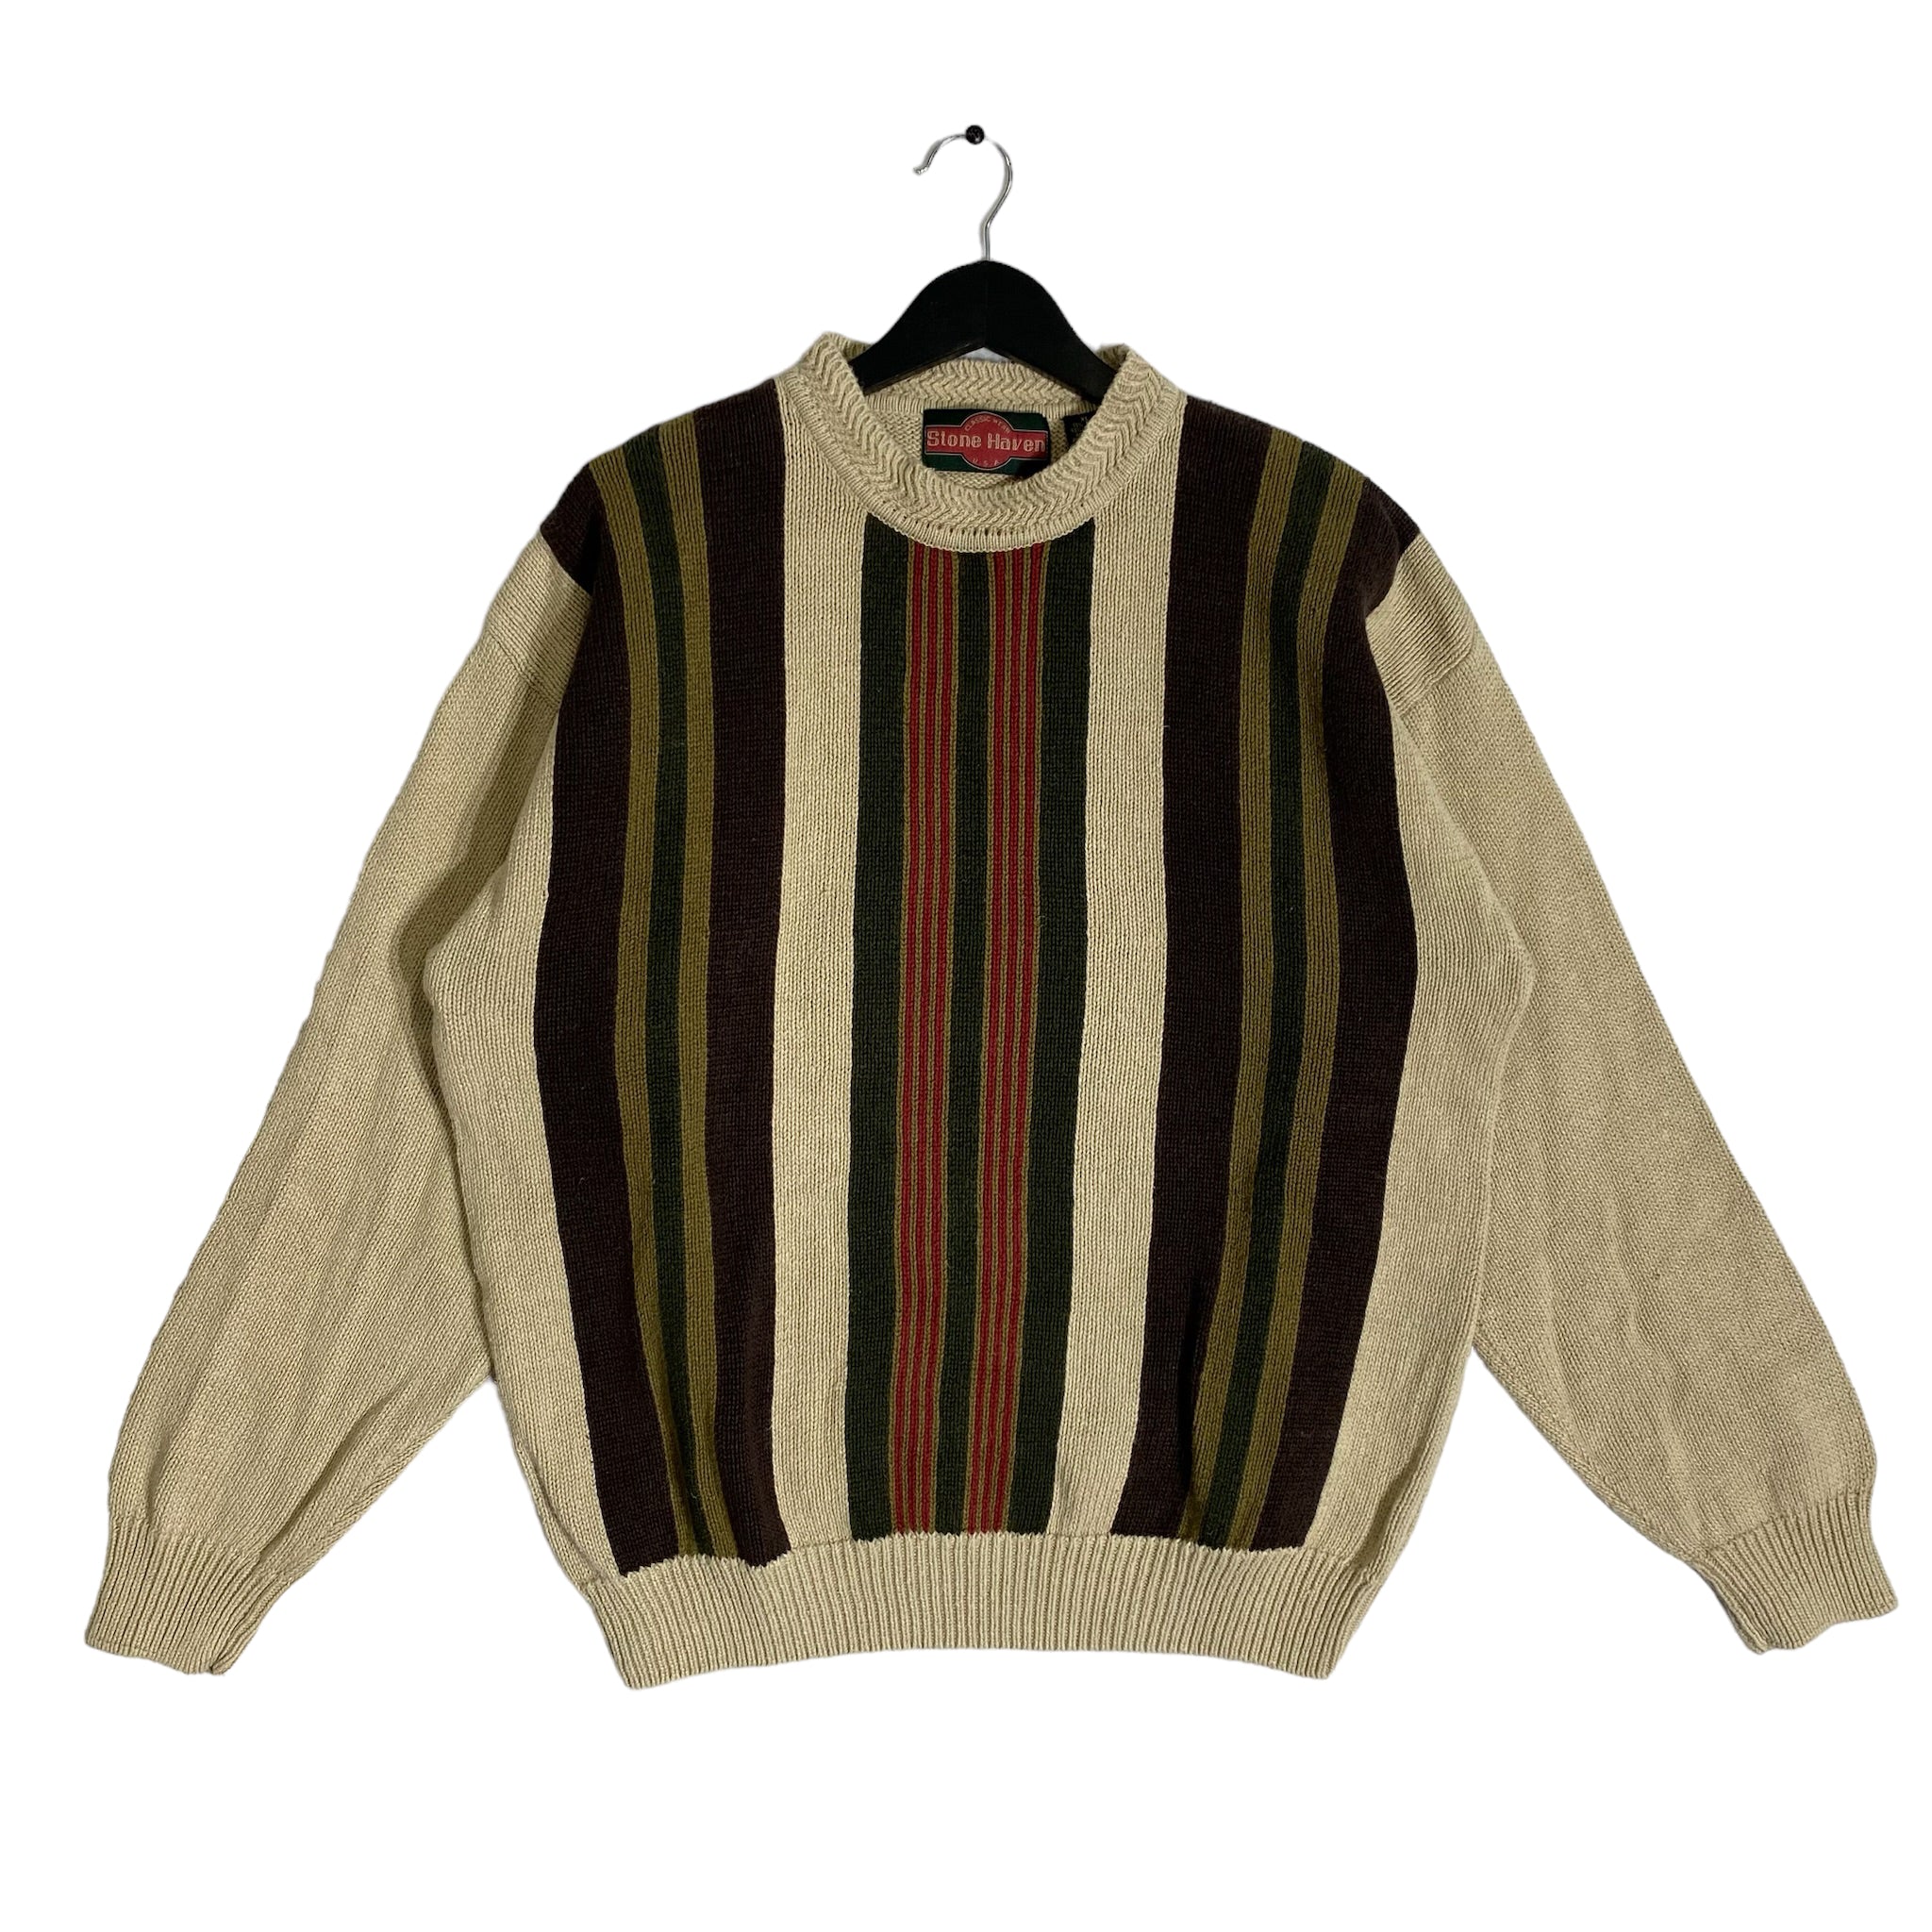 Vintage Striped Knit Sweater